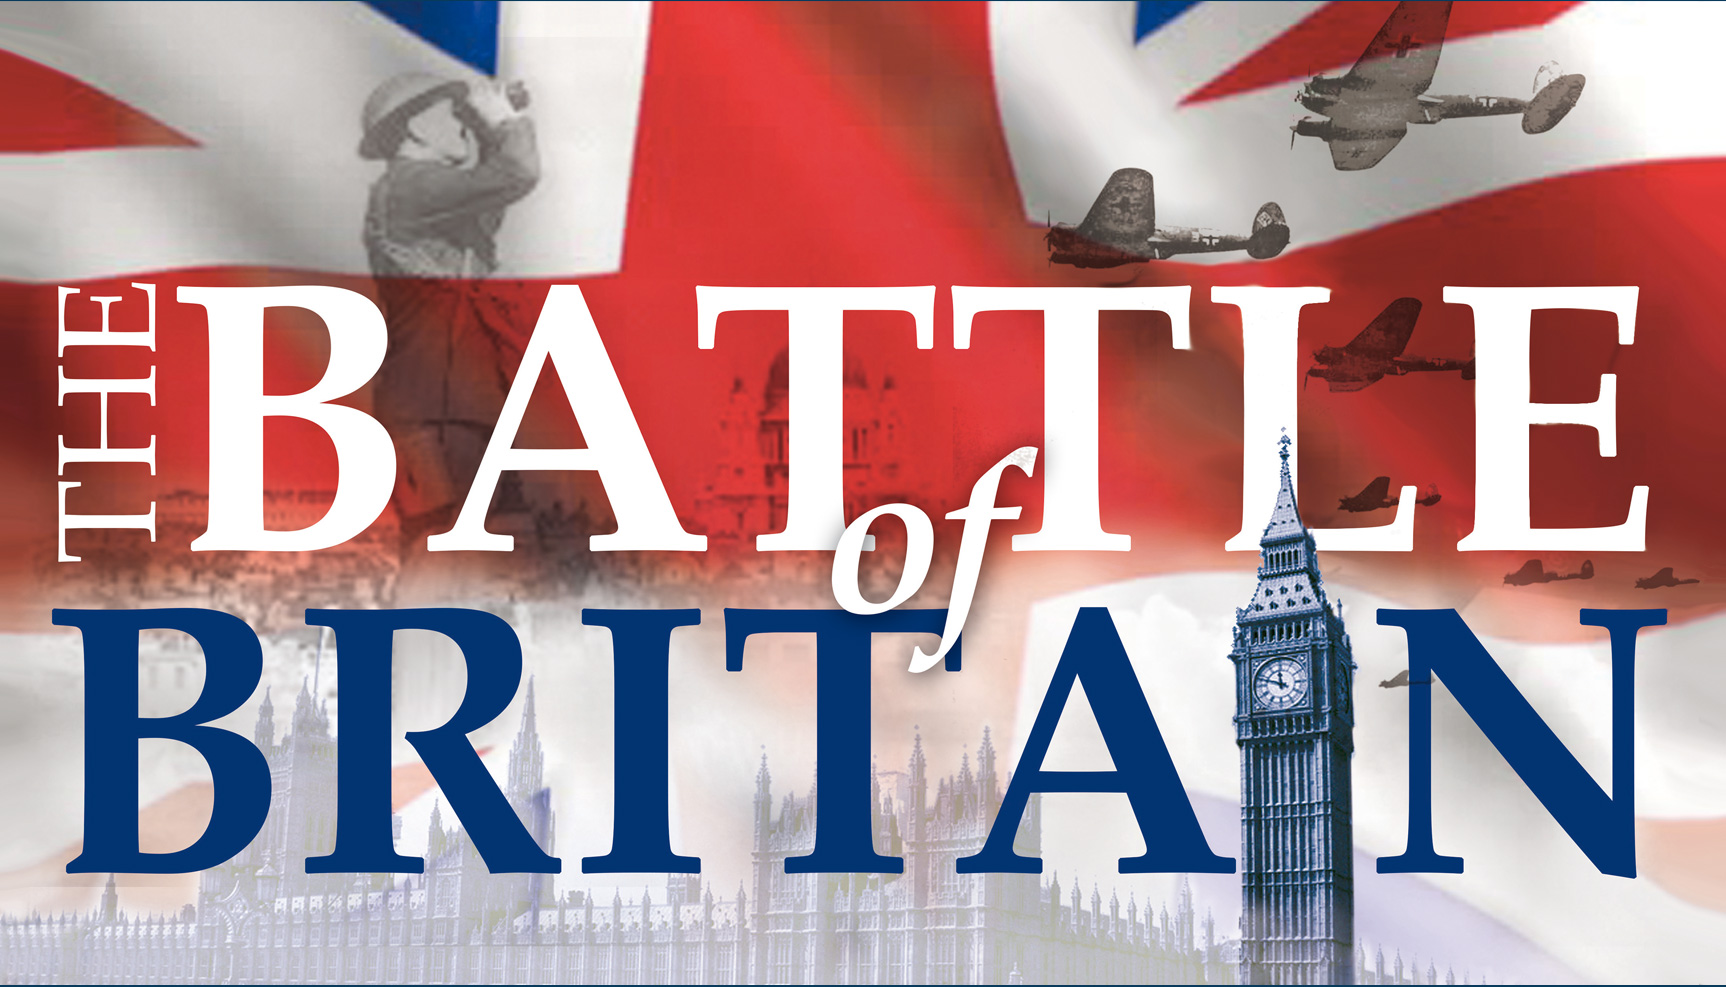 Bitva o Británii